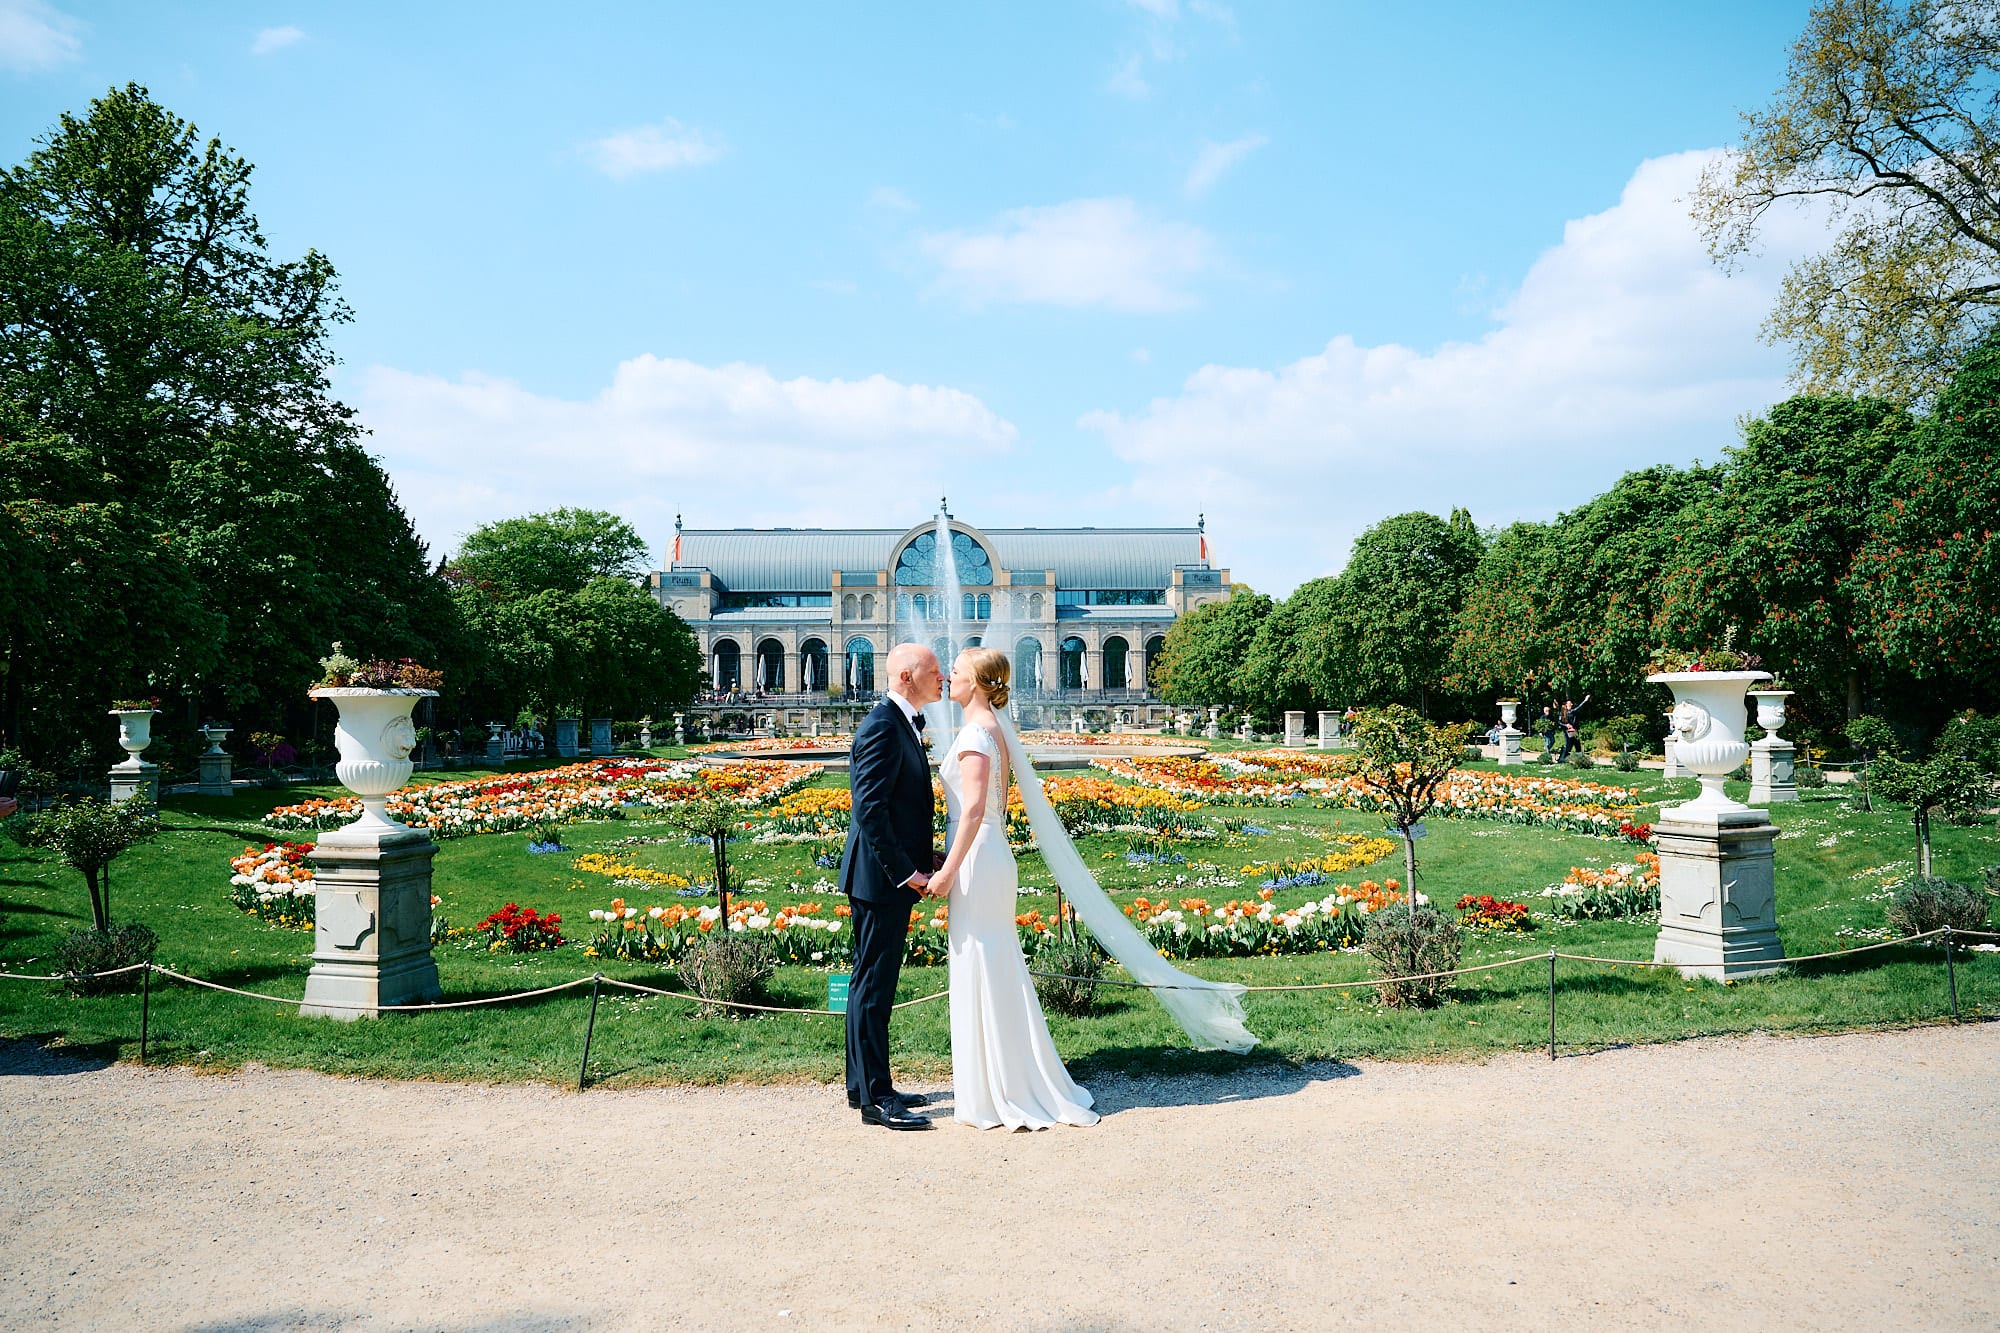 Händchen haltendes Paar in Hochzeitskleidung in einem formellen Garten mit einem klassischen Gebäude im Hintergrund.